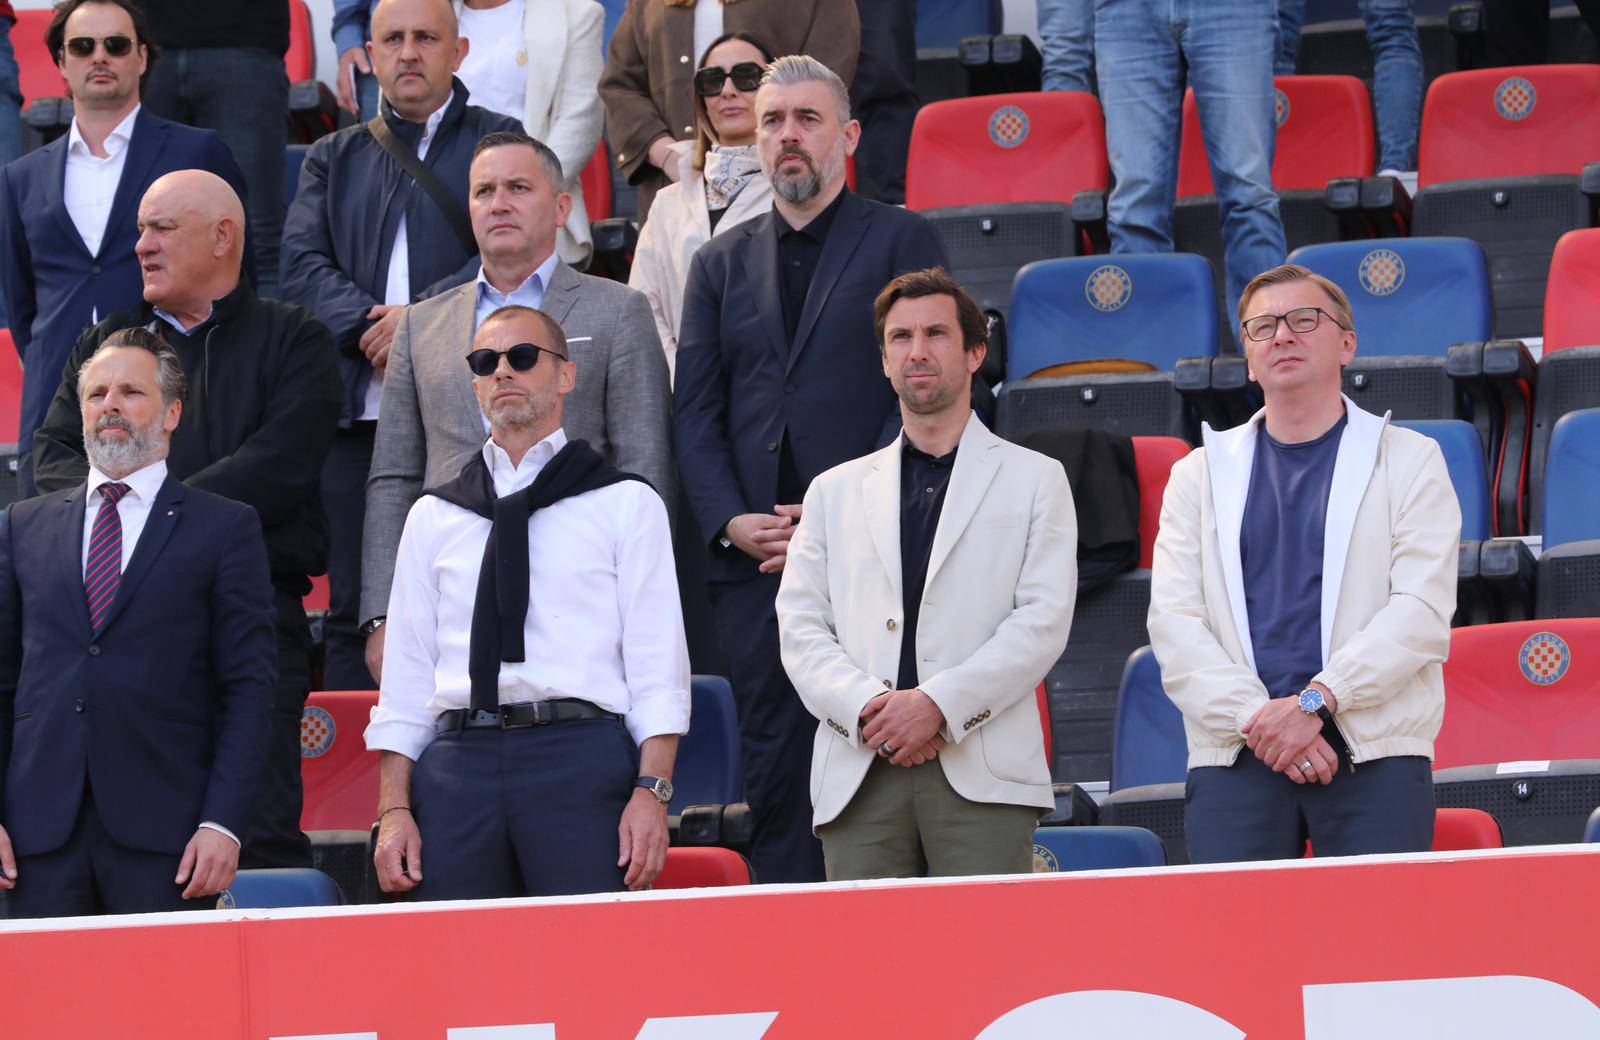 Split: Humanitarna utakmica između Hajduka i Sahtara iz Donecka